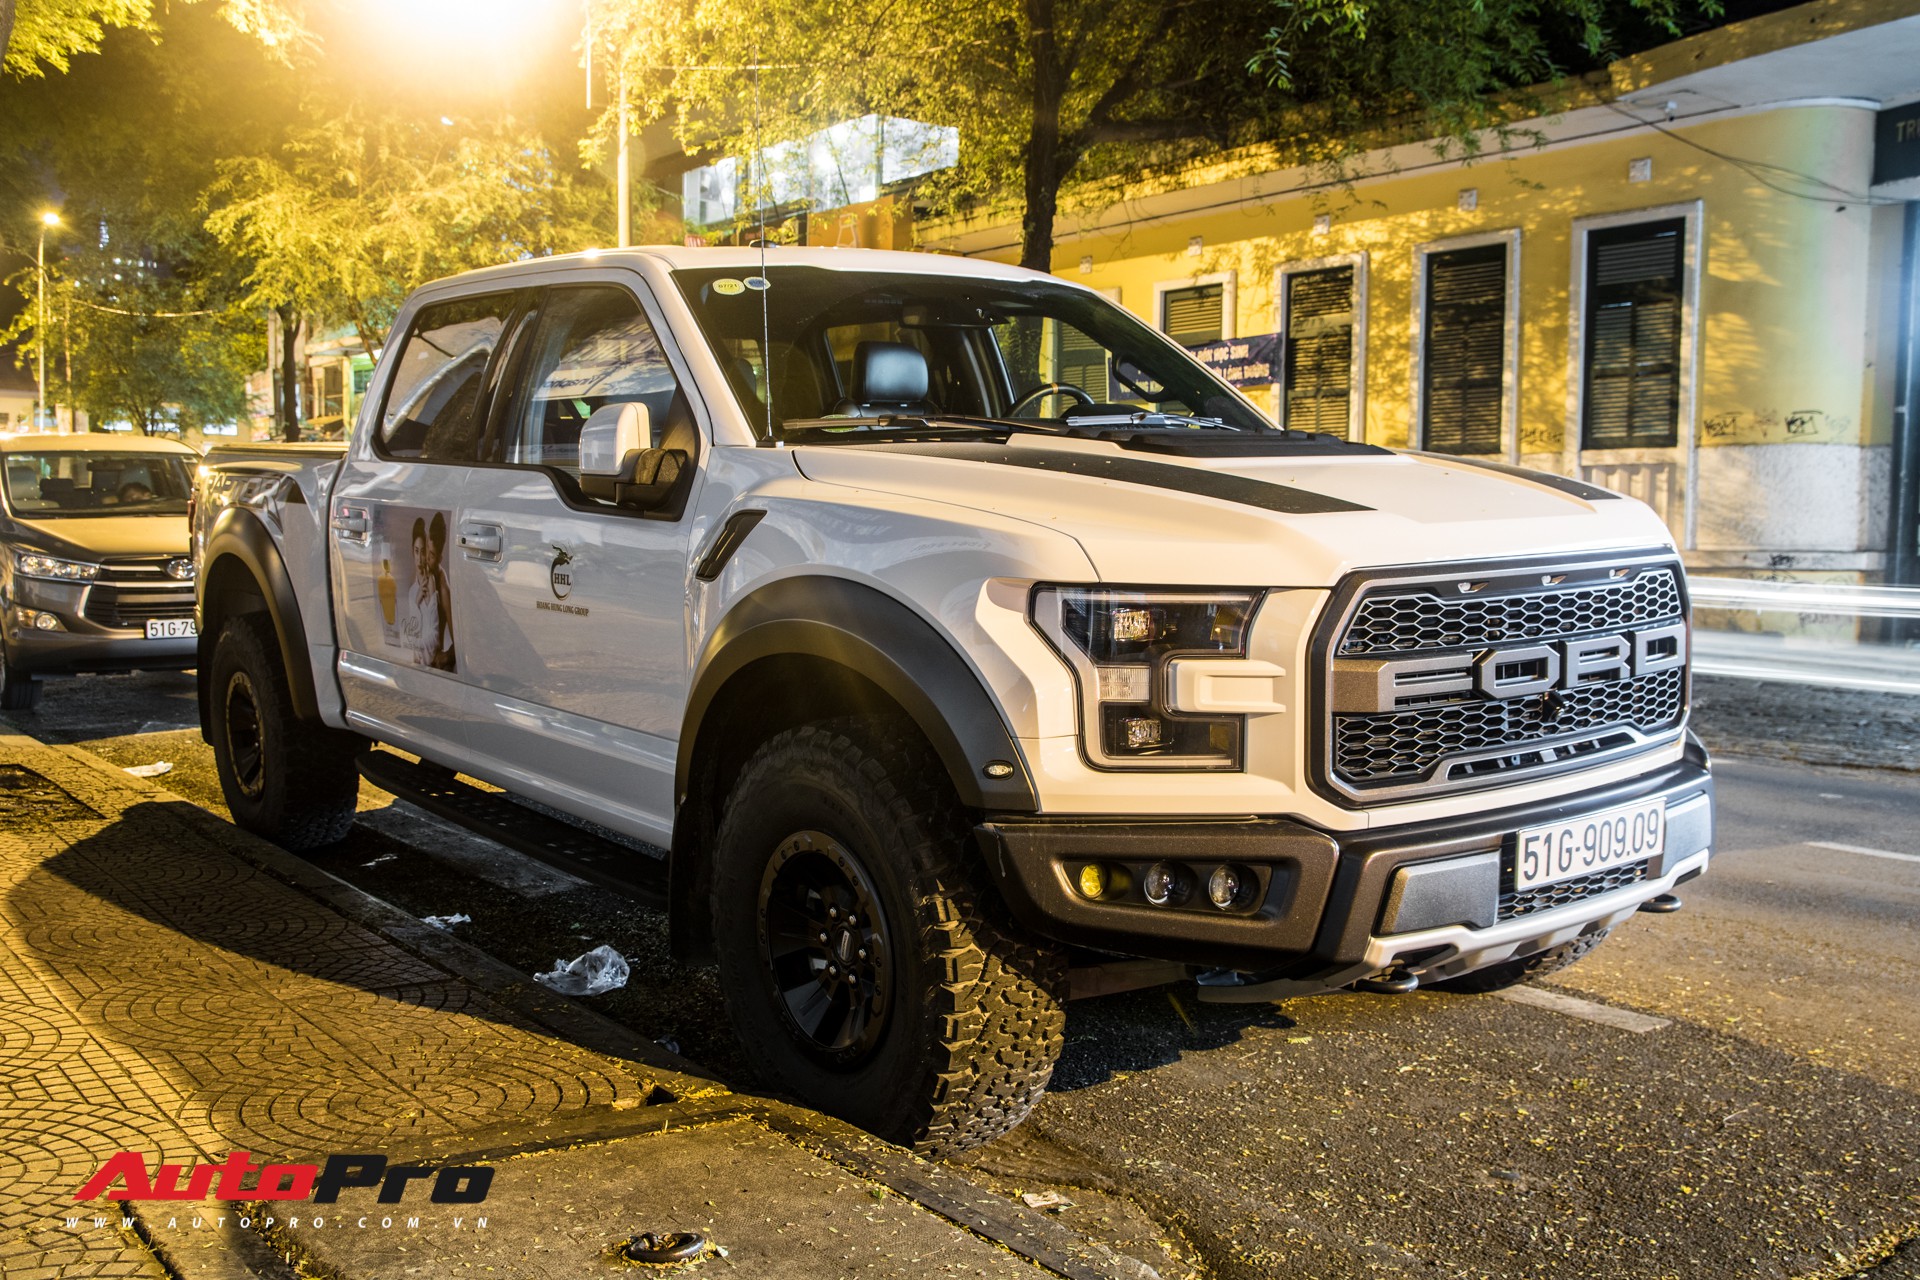 Ford Ranger Raptor 20192020 review